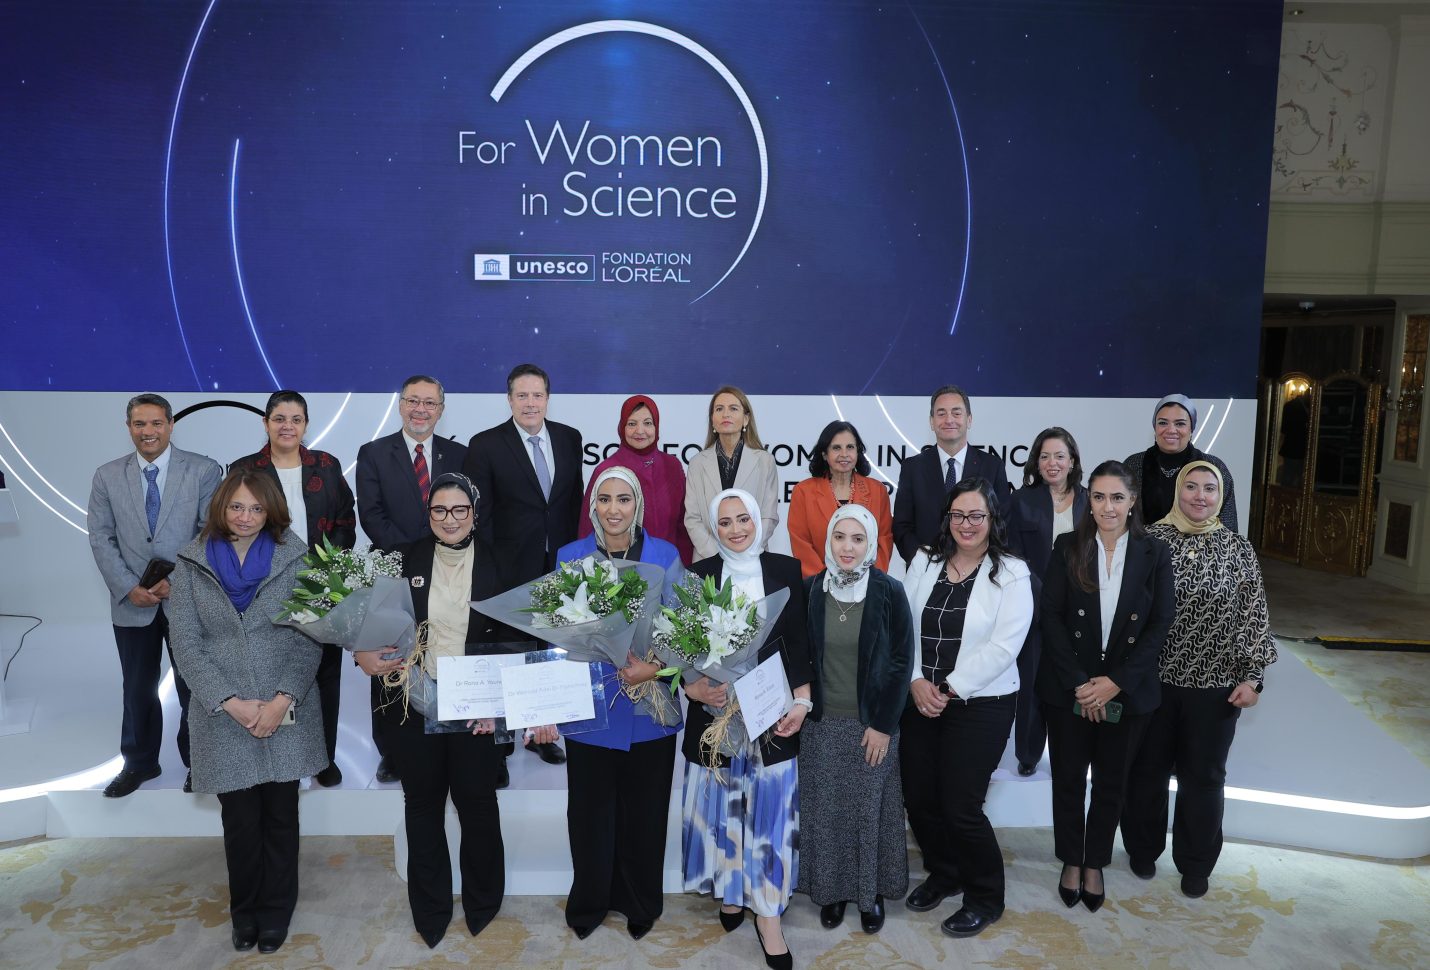 تكريم 3 باحثات مصريات من الحاصلات على زمالة برنامج «لوريال يونسكو من أجل المرأة في العلم»